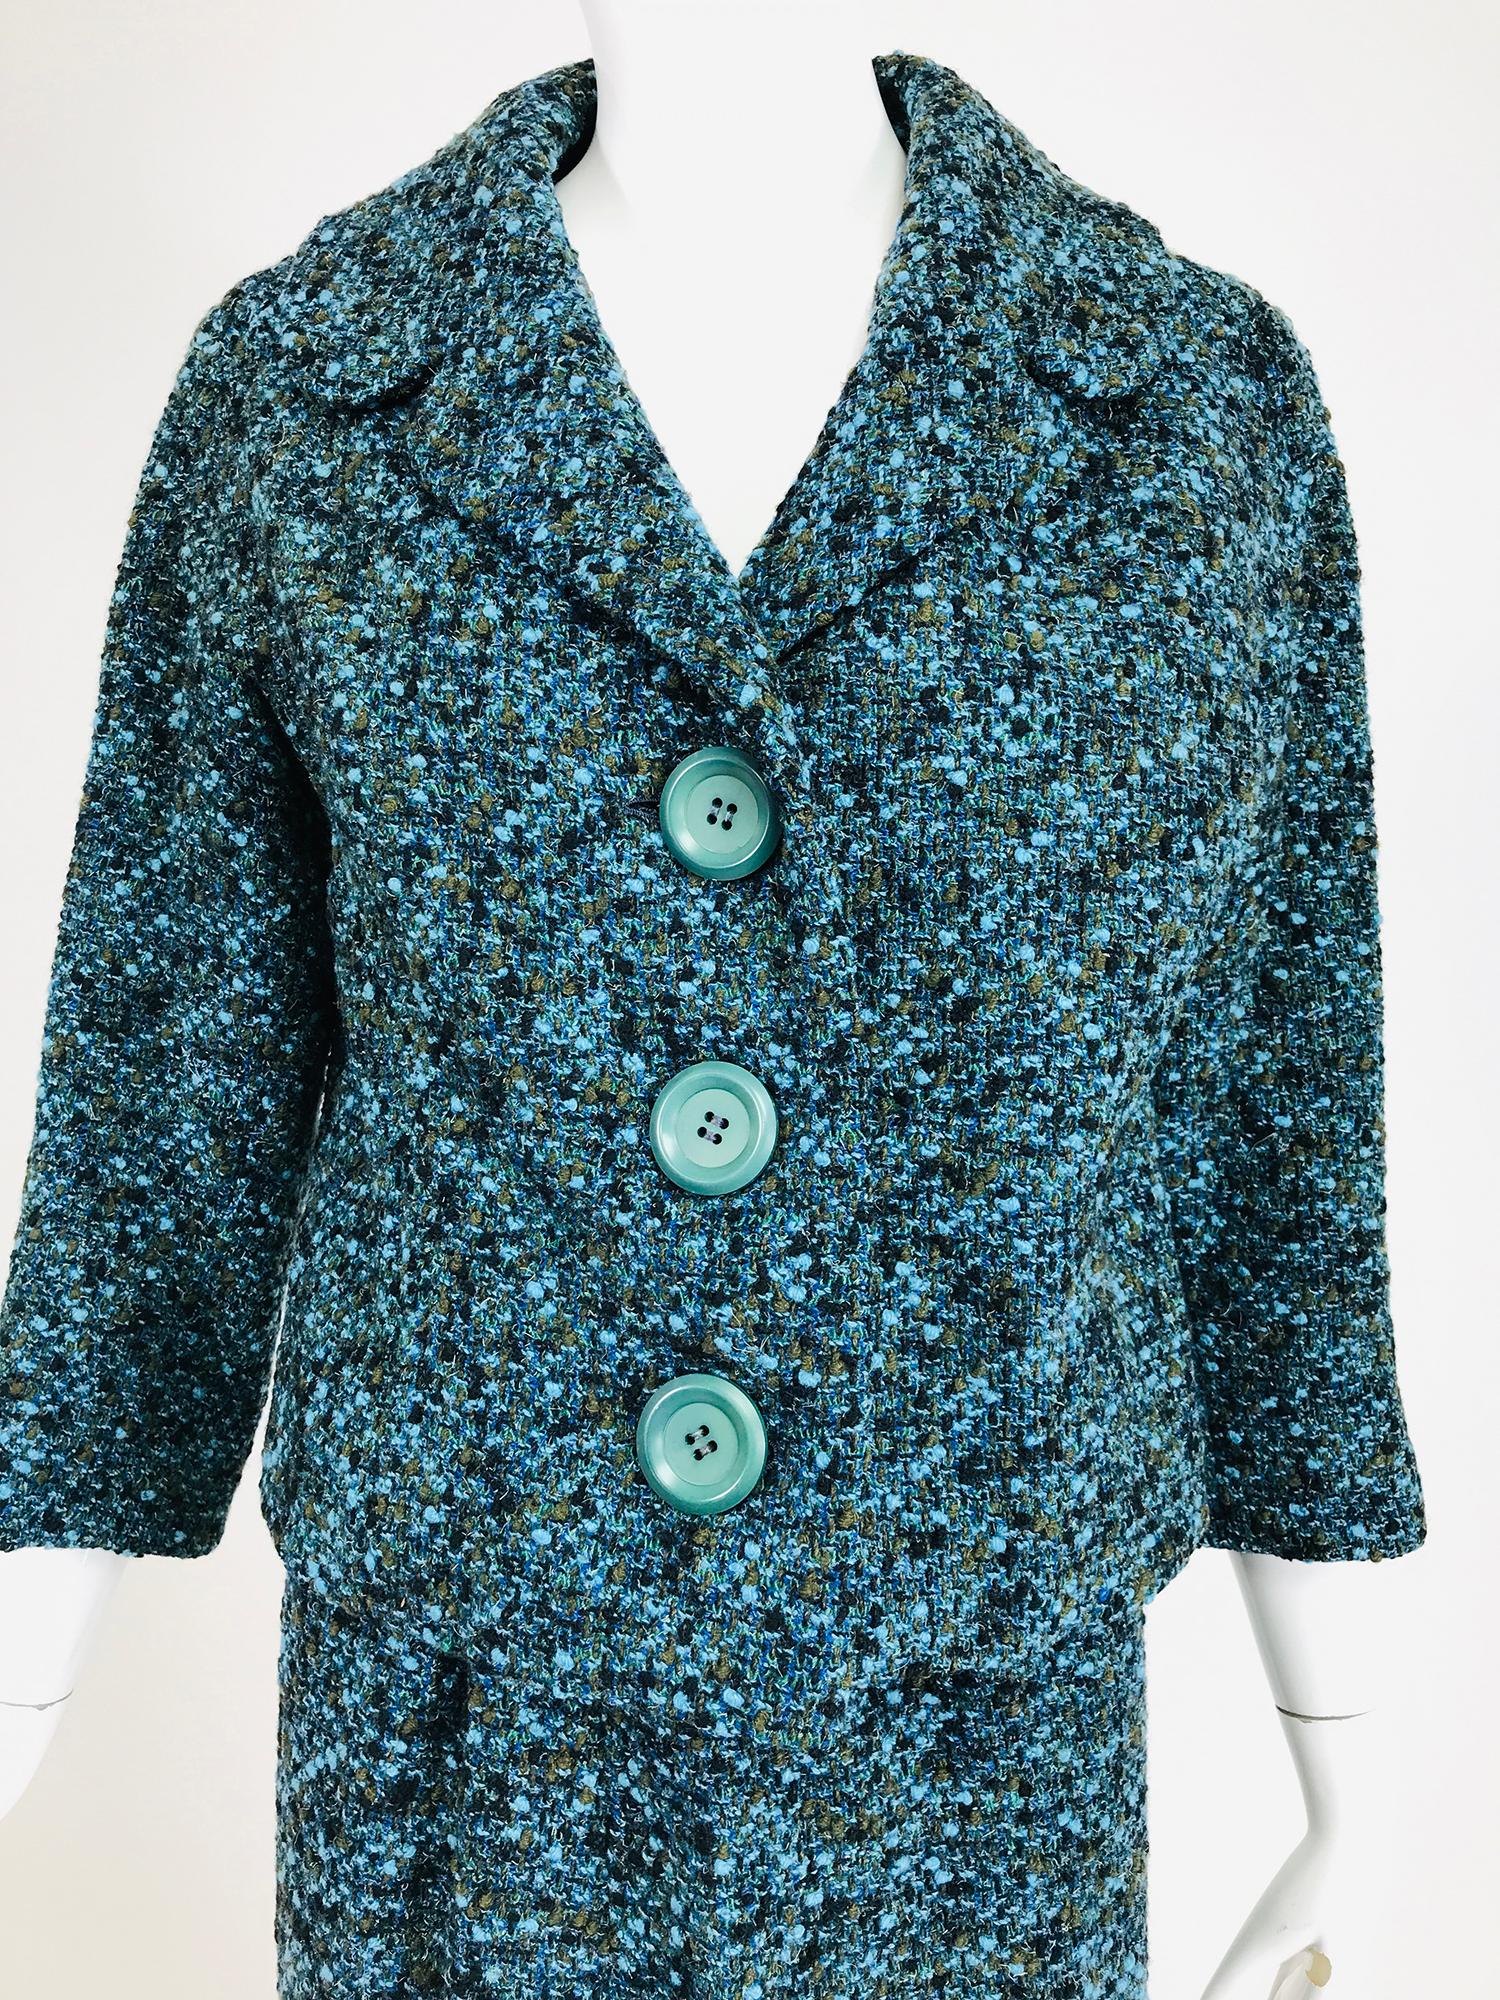 Jeanne Lanvin, nummerierte Couture, Anfang der 1960er Jahre, entworfen von Jules-Francois Crahay. Aqua-blauer Tweed-Rock aus genoppter Wolle, gesprenkelt in Aqua-Blau, Lodengrün und Schwarz. Die Jacke hat einen V-Ausschnitt mit geschwungenem,